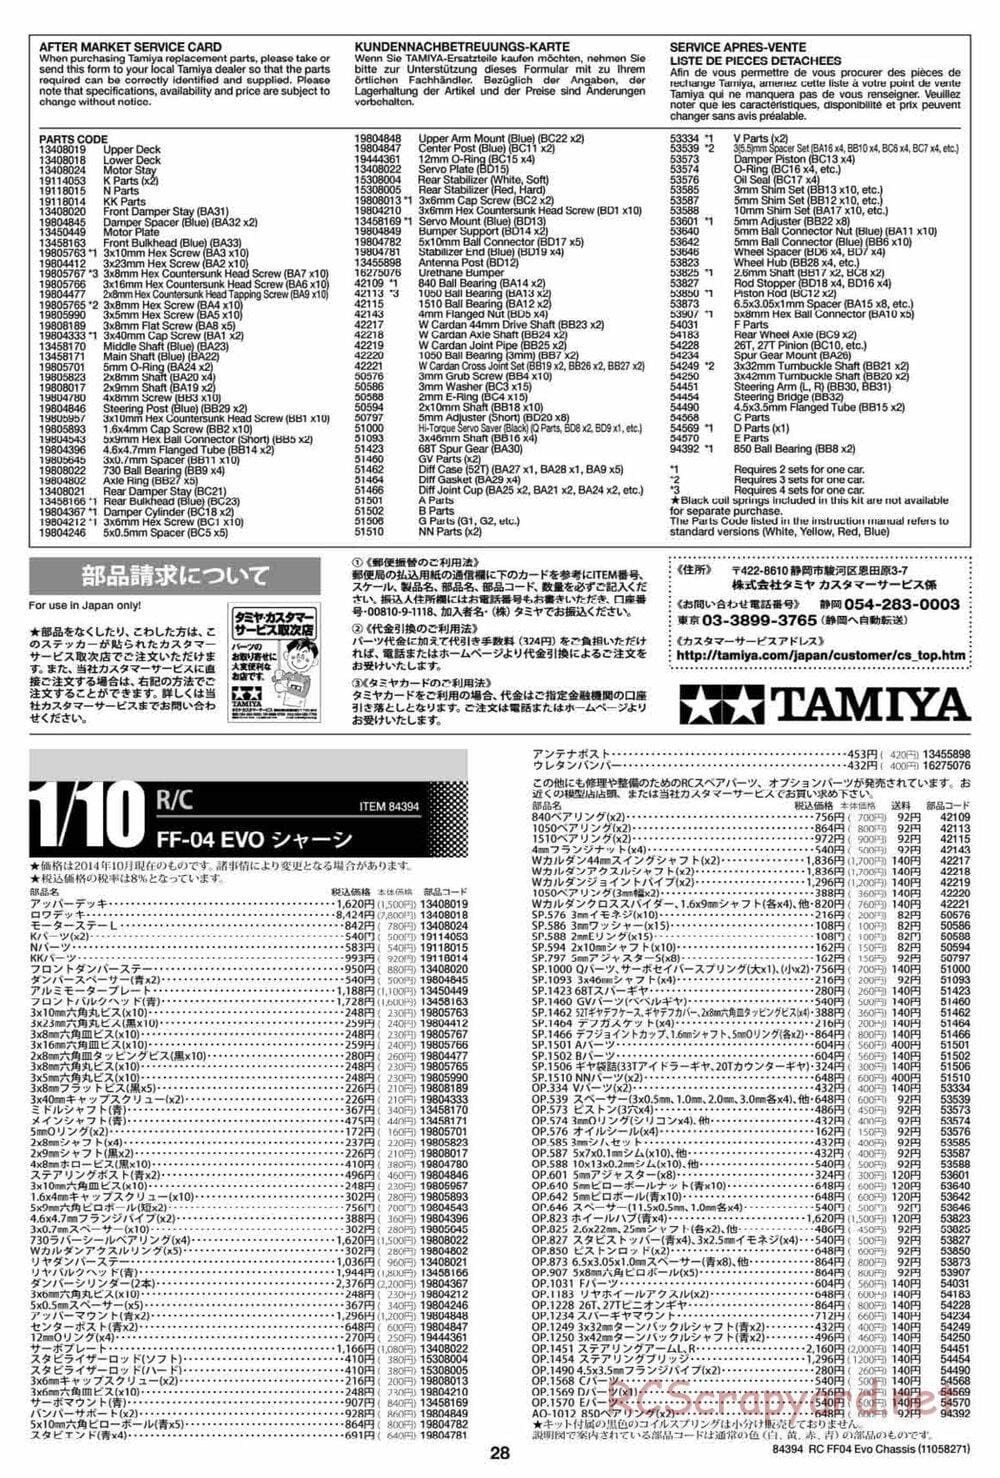 Tamiya - FF-04 Evo Chassis - Manual - Page 28